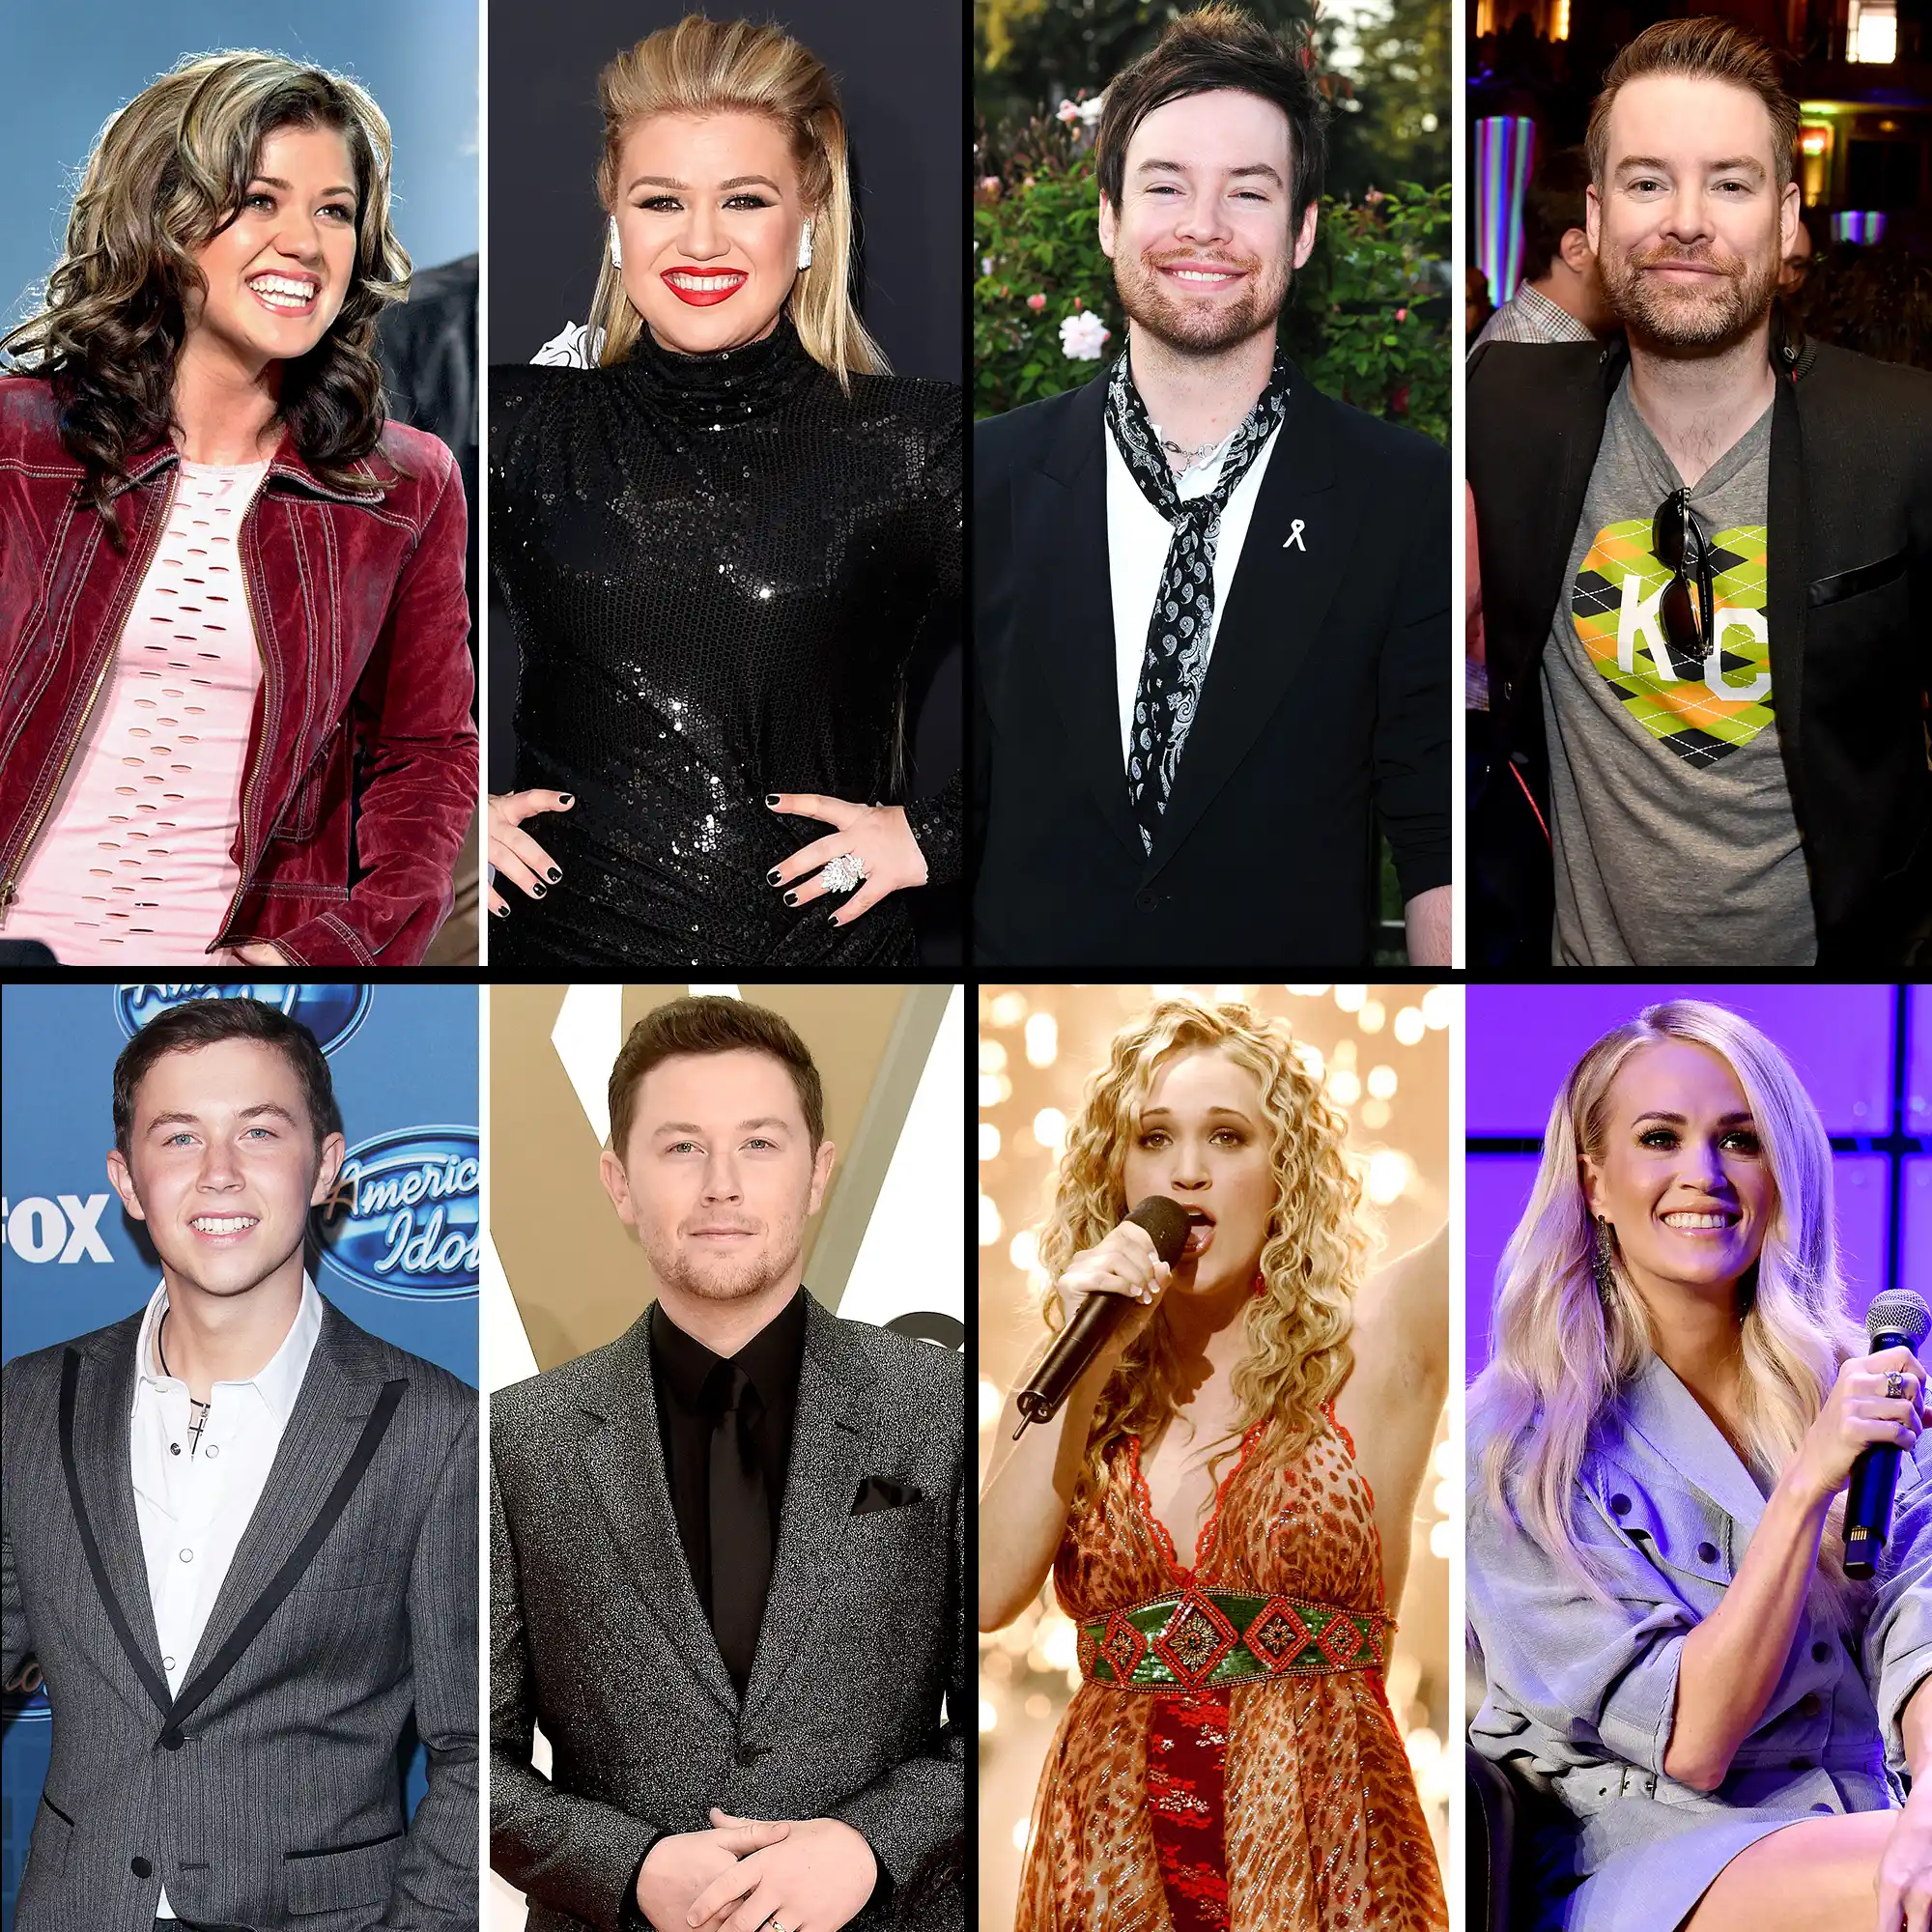 List of Winners of the Past American Idol Seasons